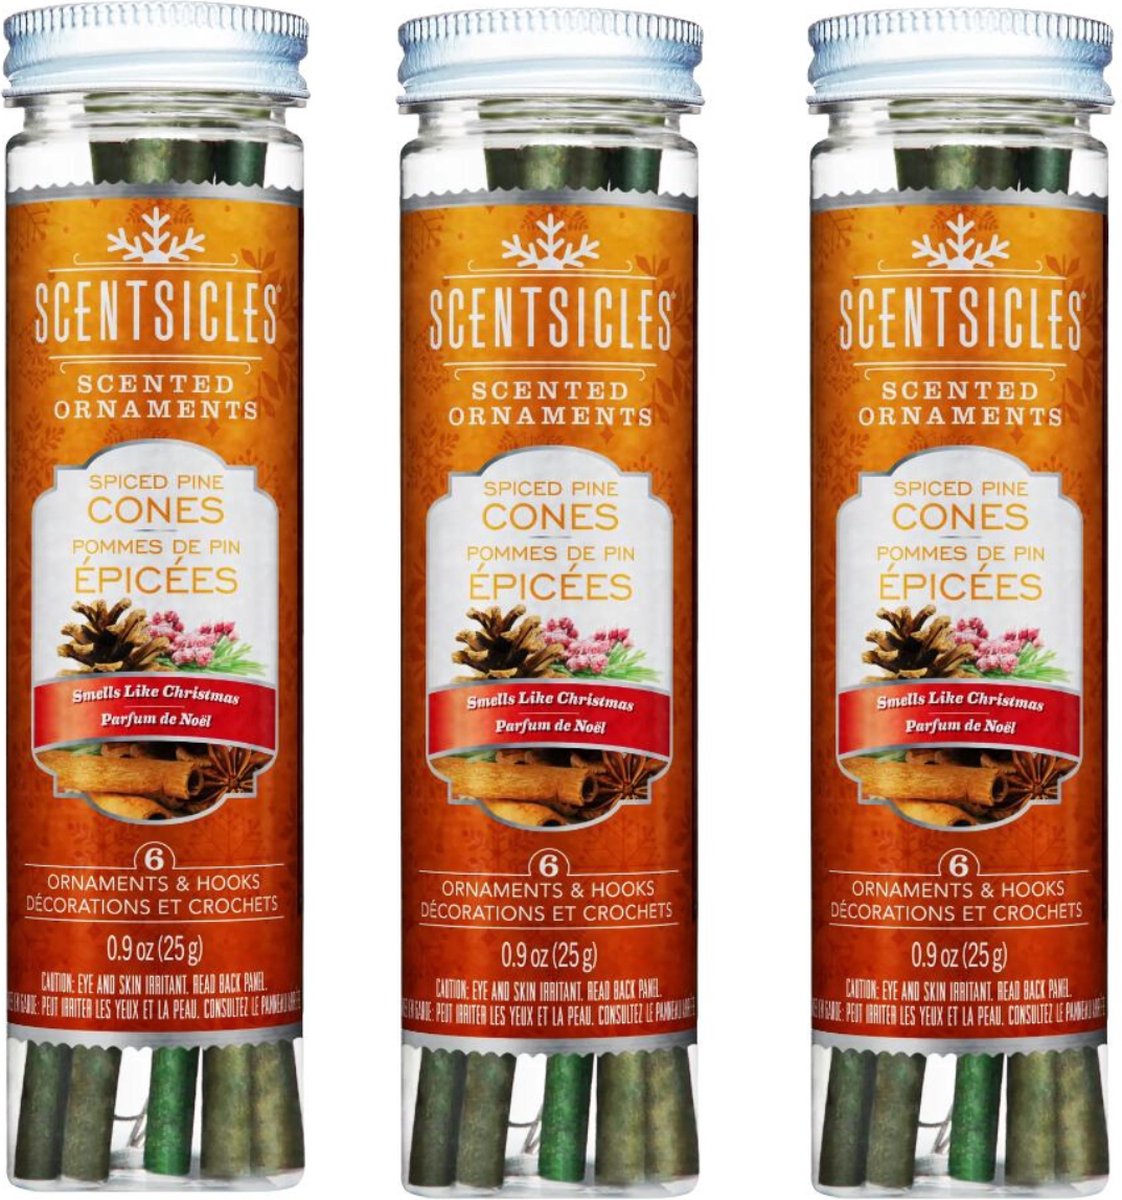 Scentsicles Geurstokjes voor je kerstboom - Spiced Pine Cones (18 geurstokjes) - Heerlijk langdurende geur